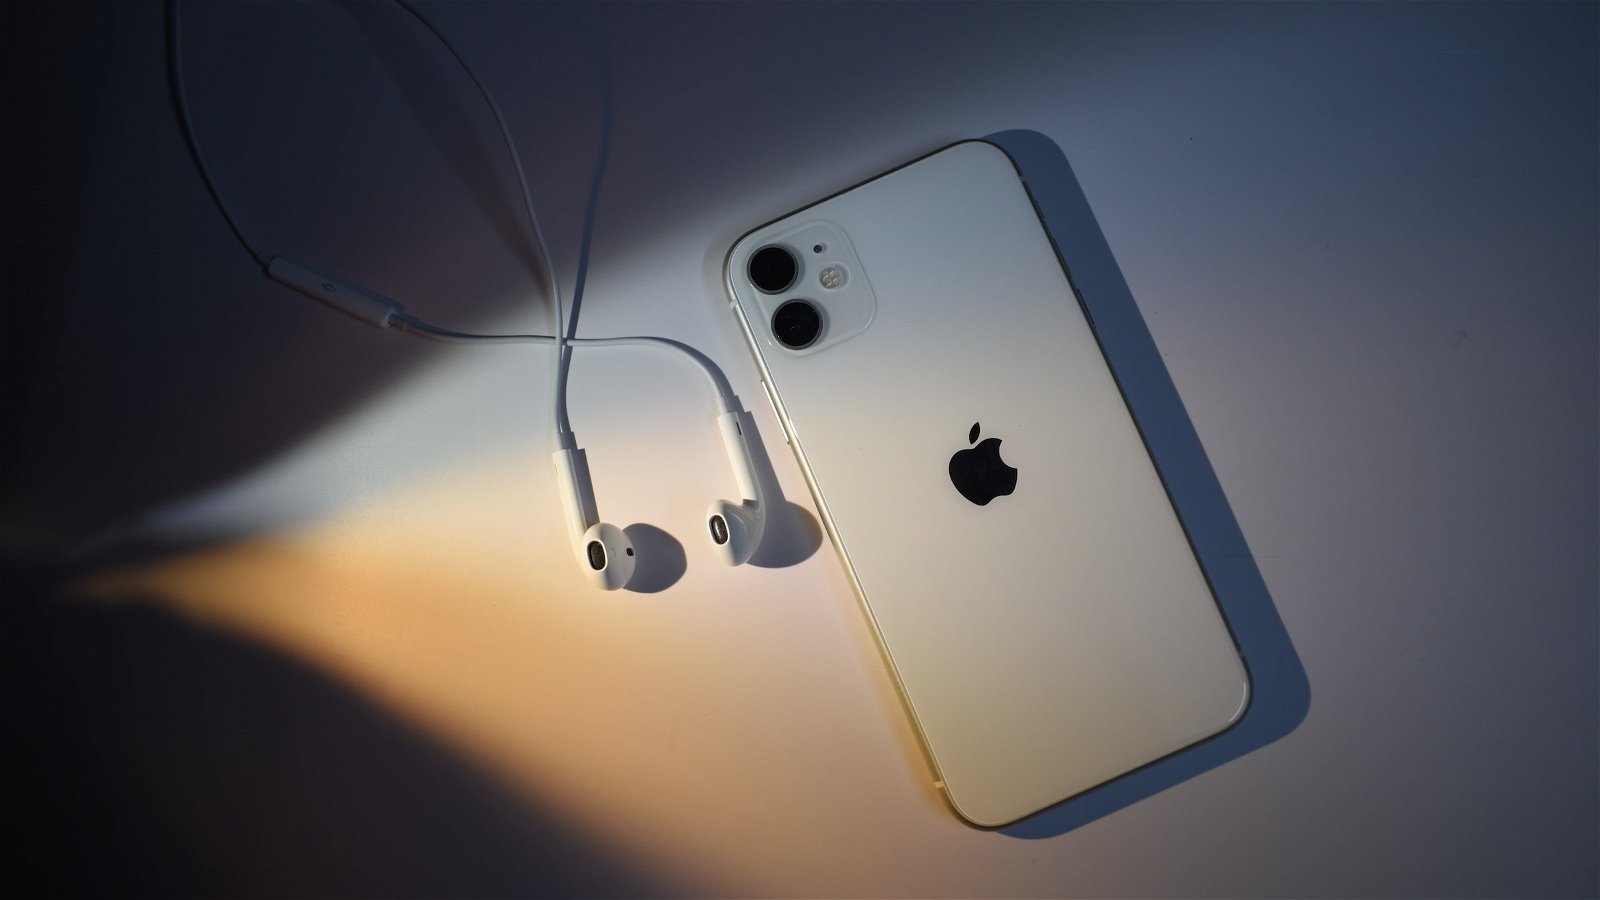 Volví a usar los EarPods más baratos de Apple, y no lo odié por